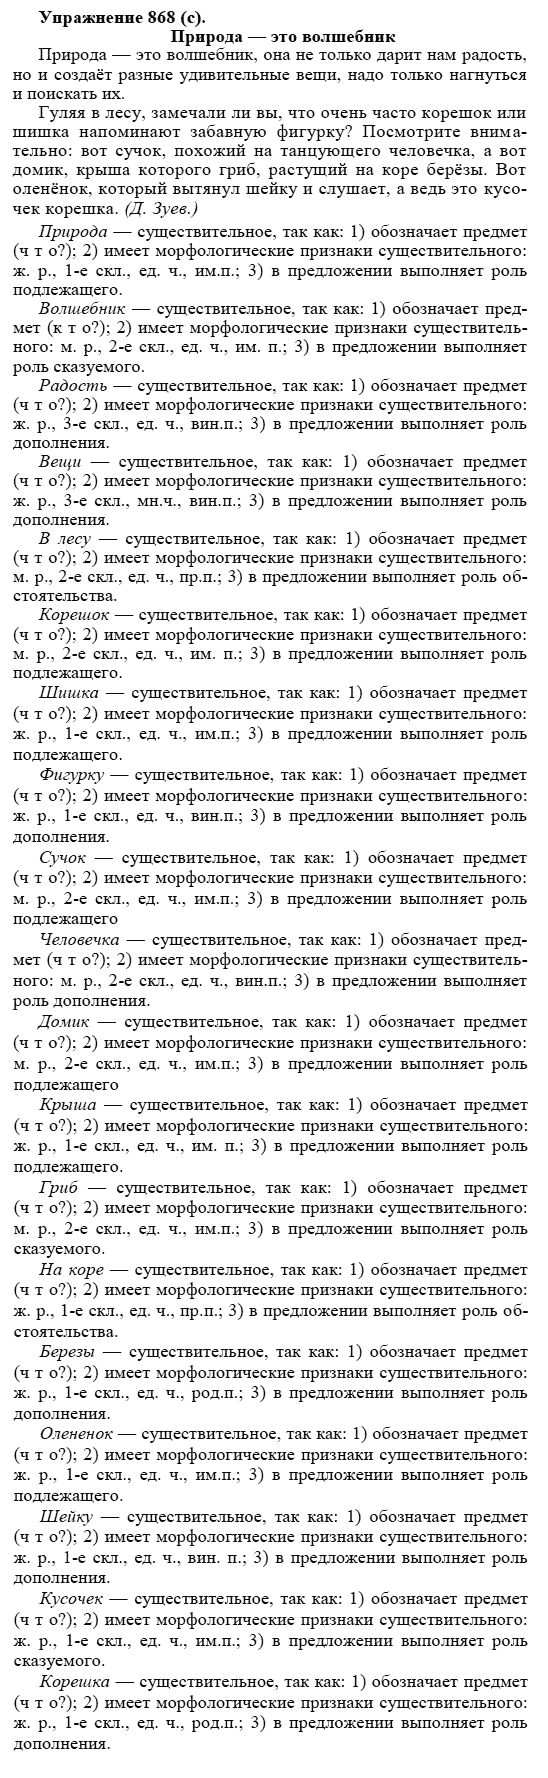 Практика, 5 класс, А.Ю. Купалова, 2007-2010, задание: 868(с)